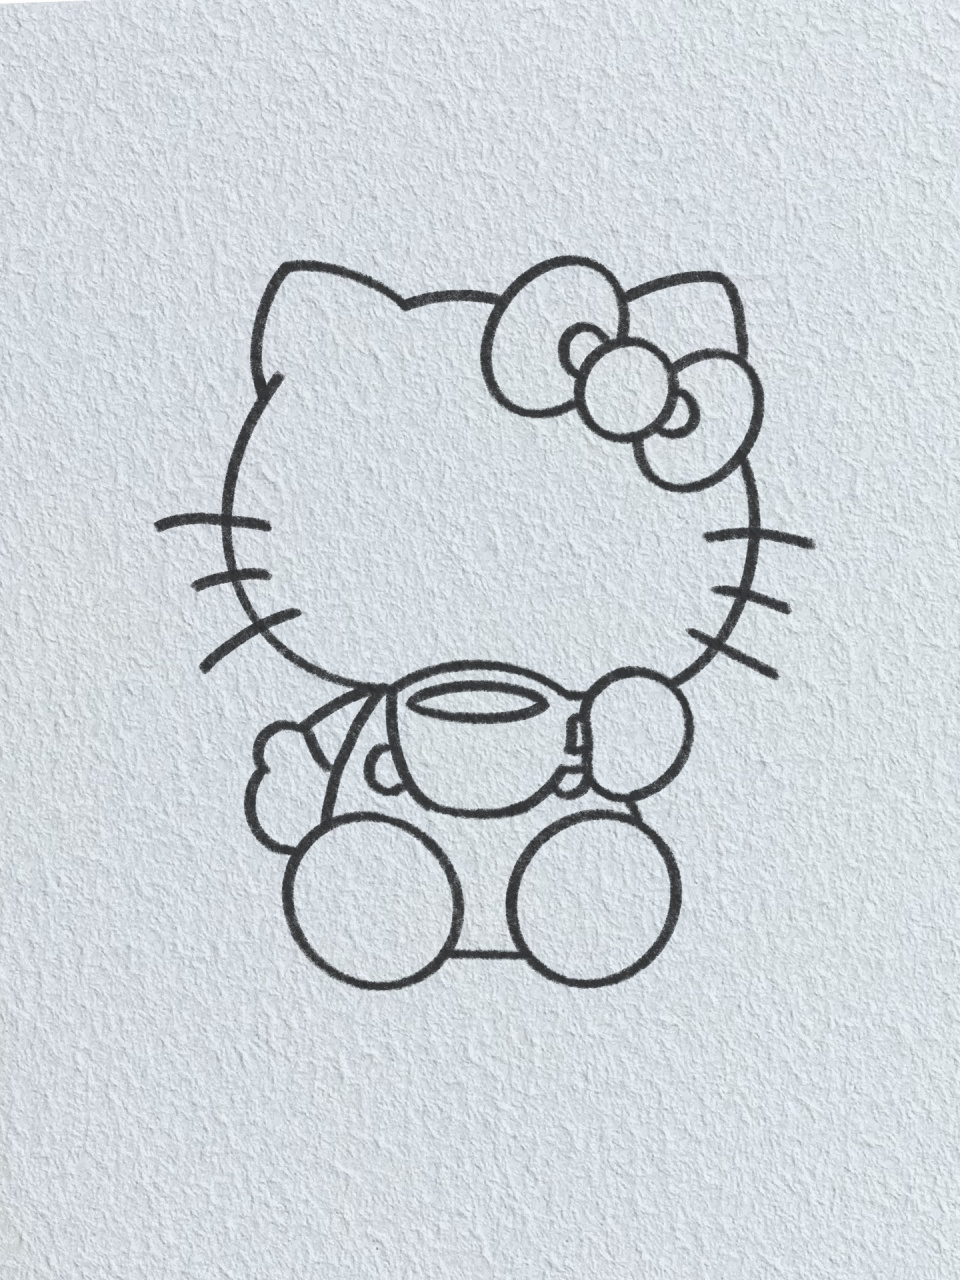 小猫简笔画动漫kitty图片